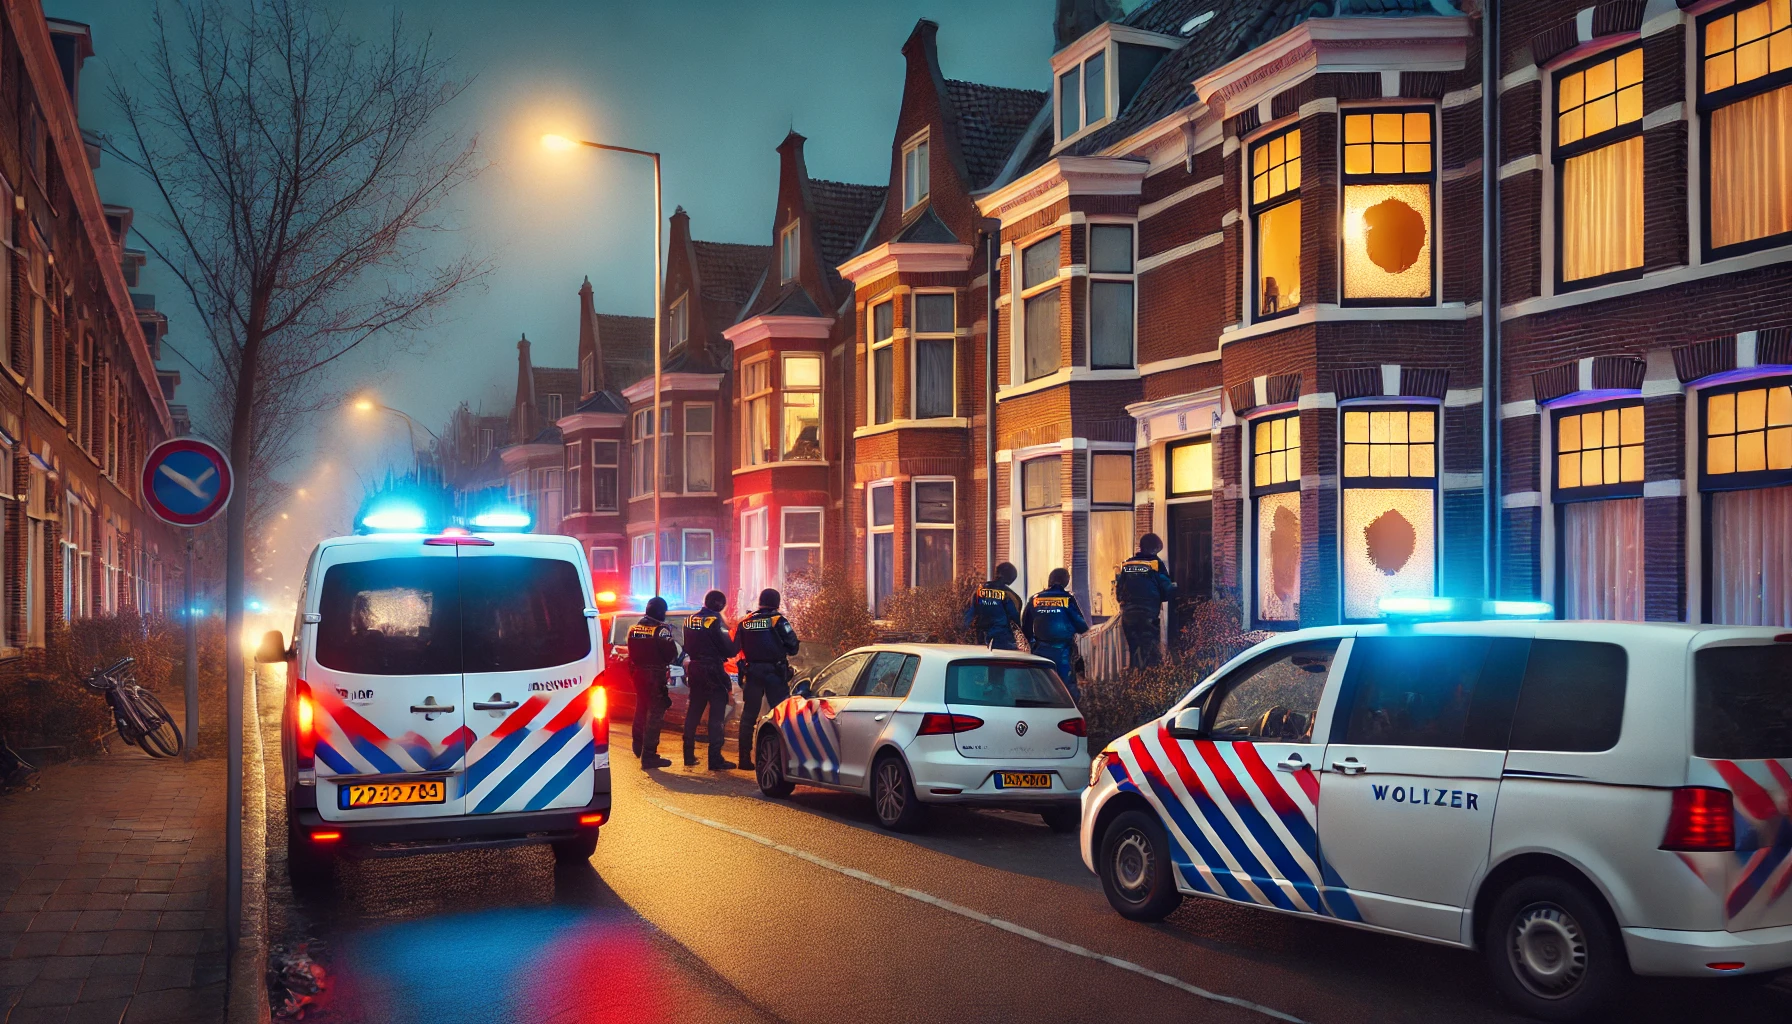 Den Haag'da Ev Soygununda Bir Kişi Yaralandı